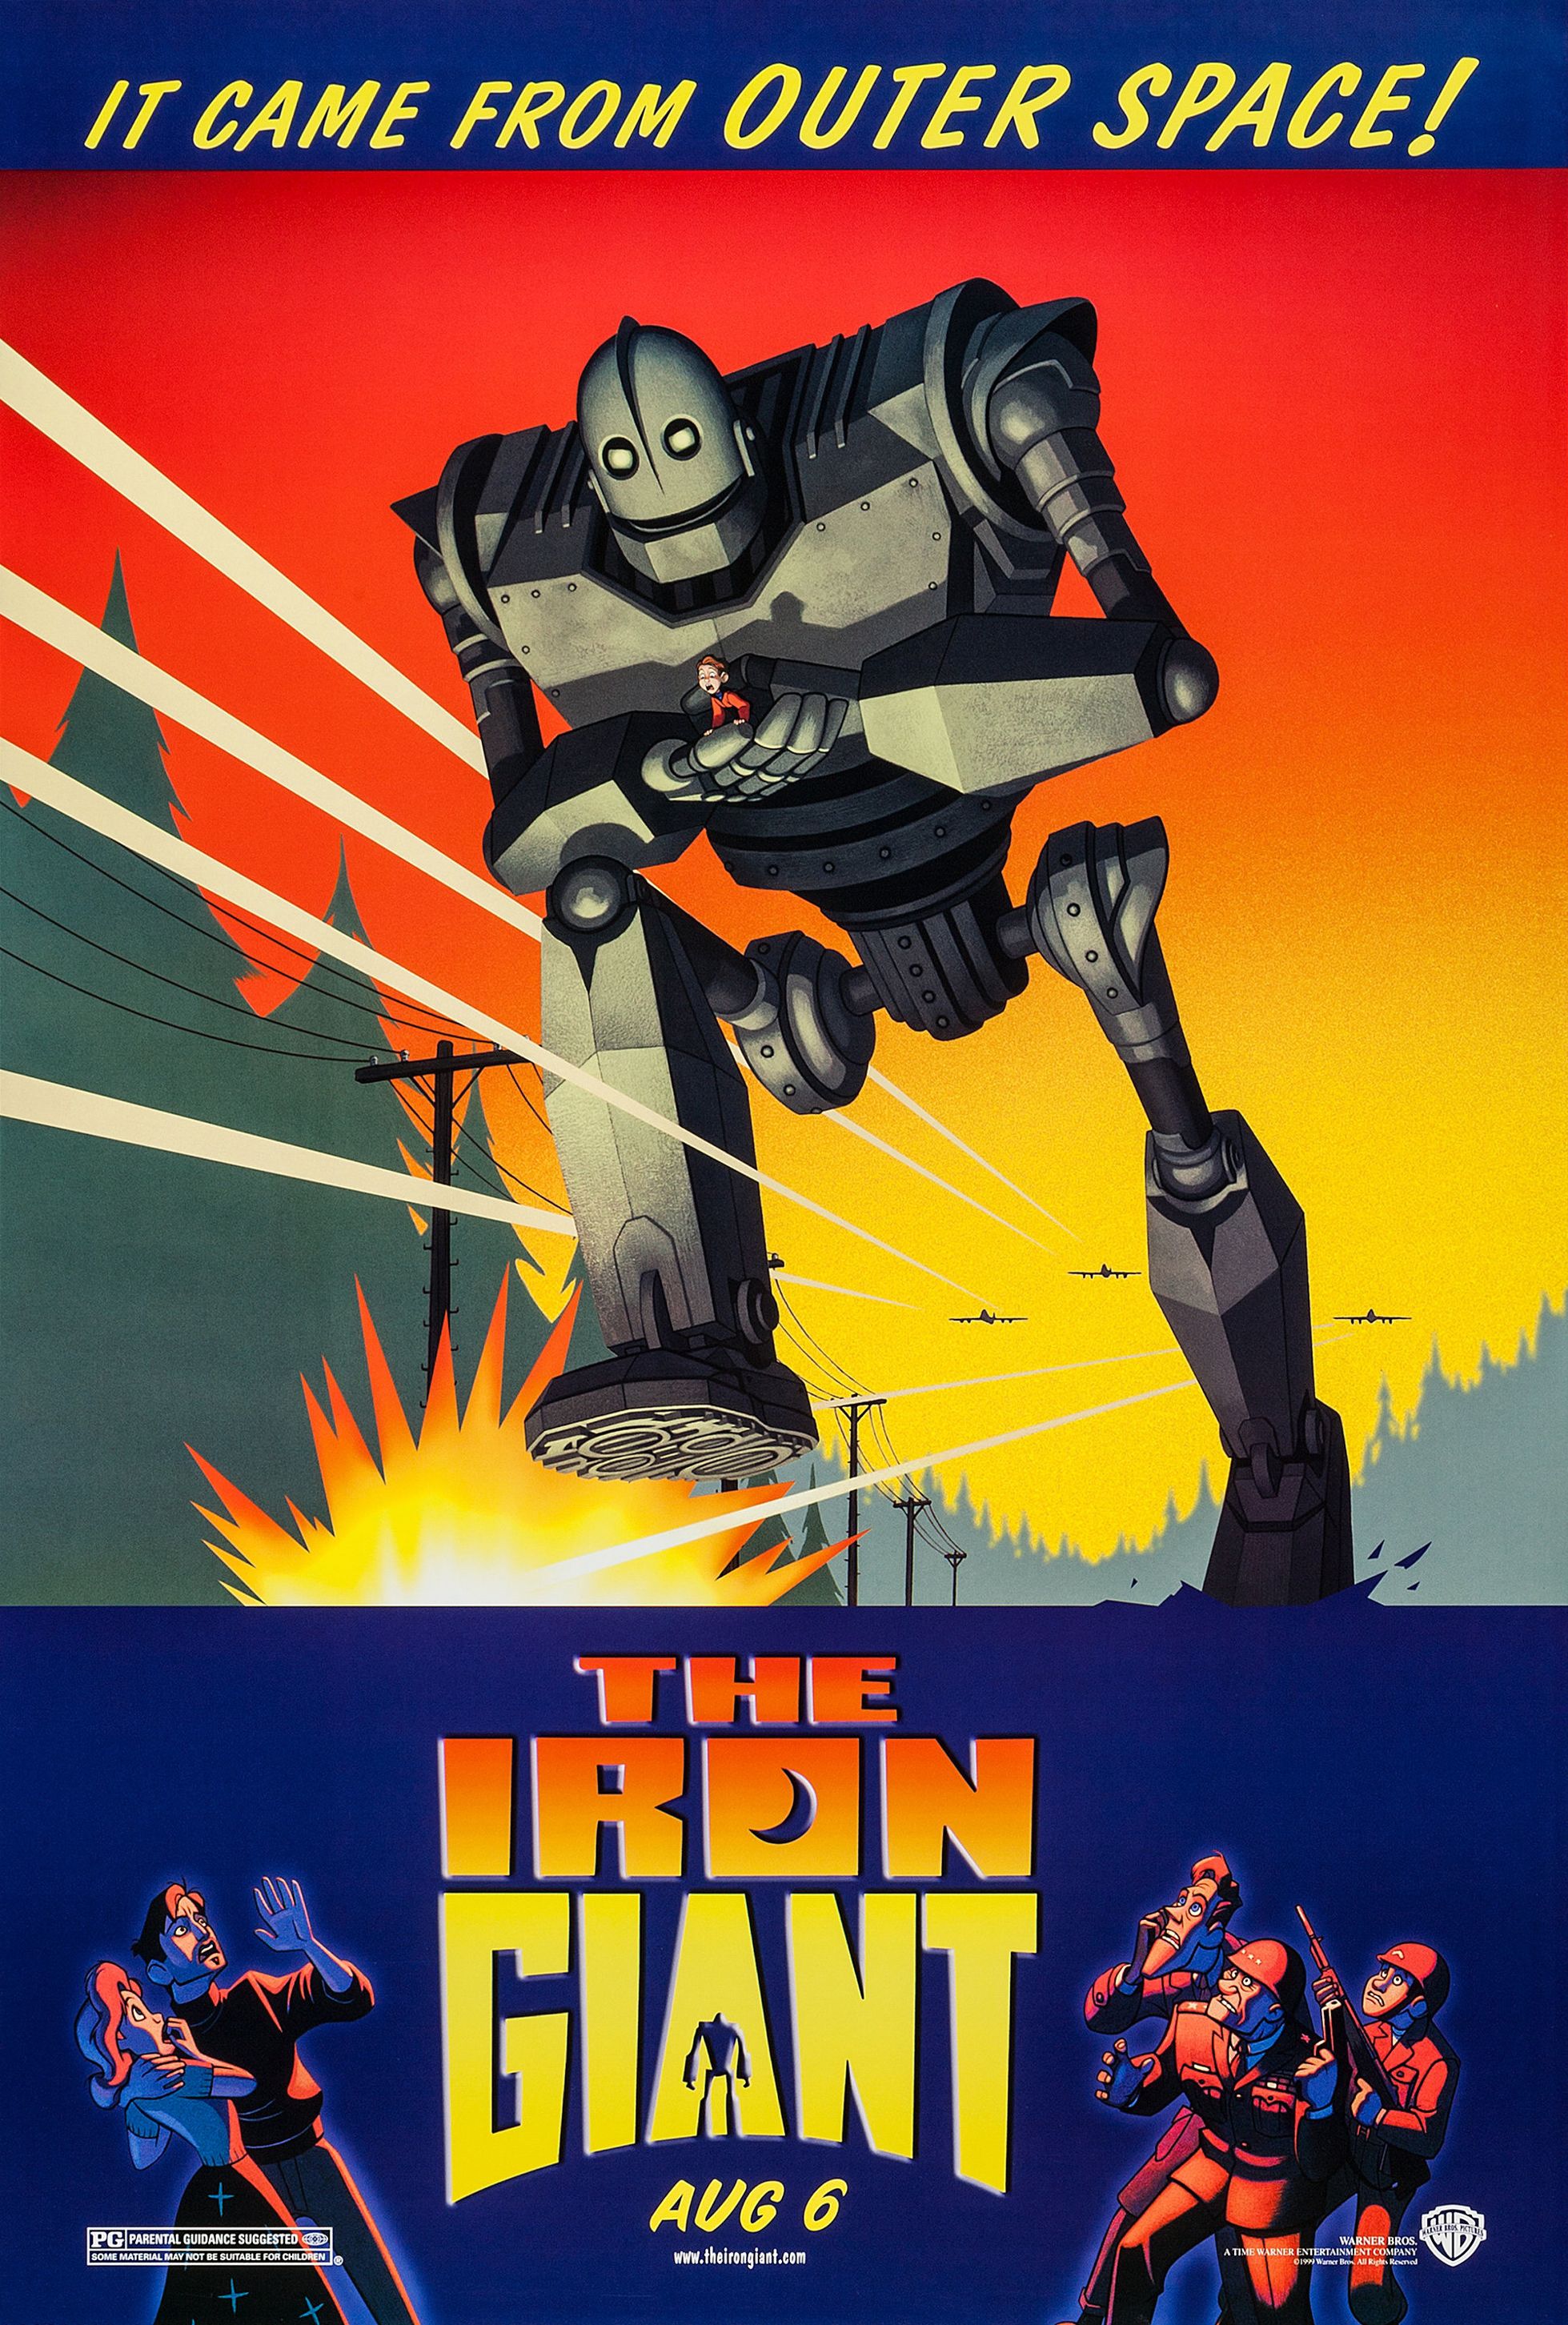 The Iron Giant Film Poster